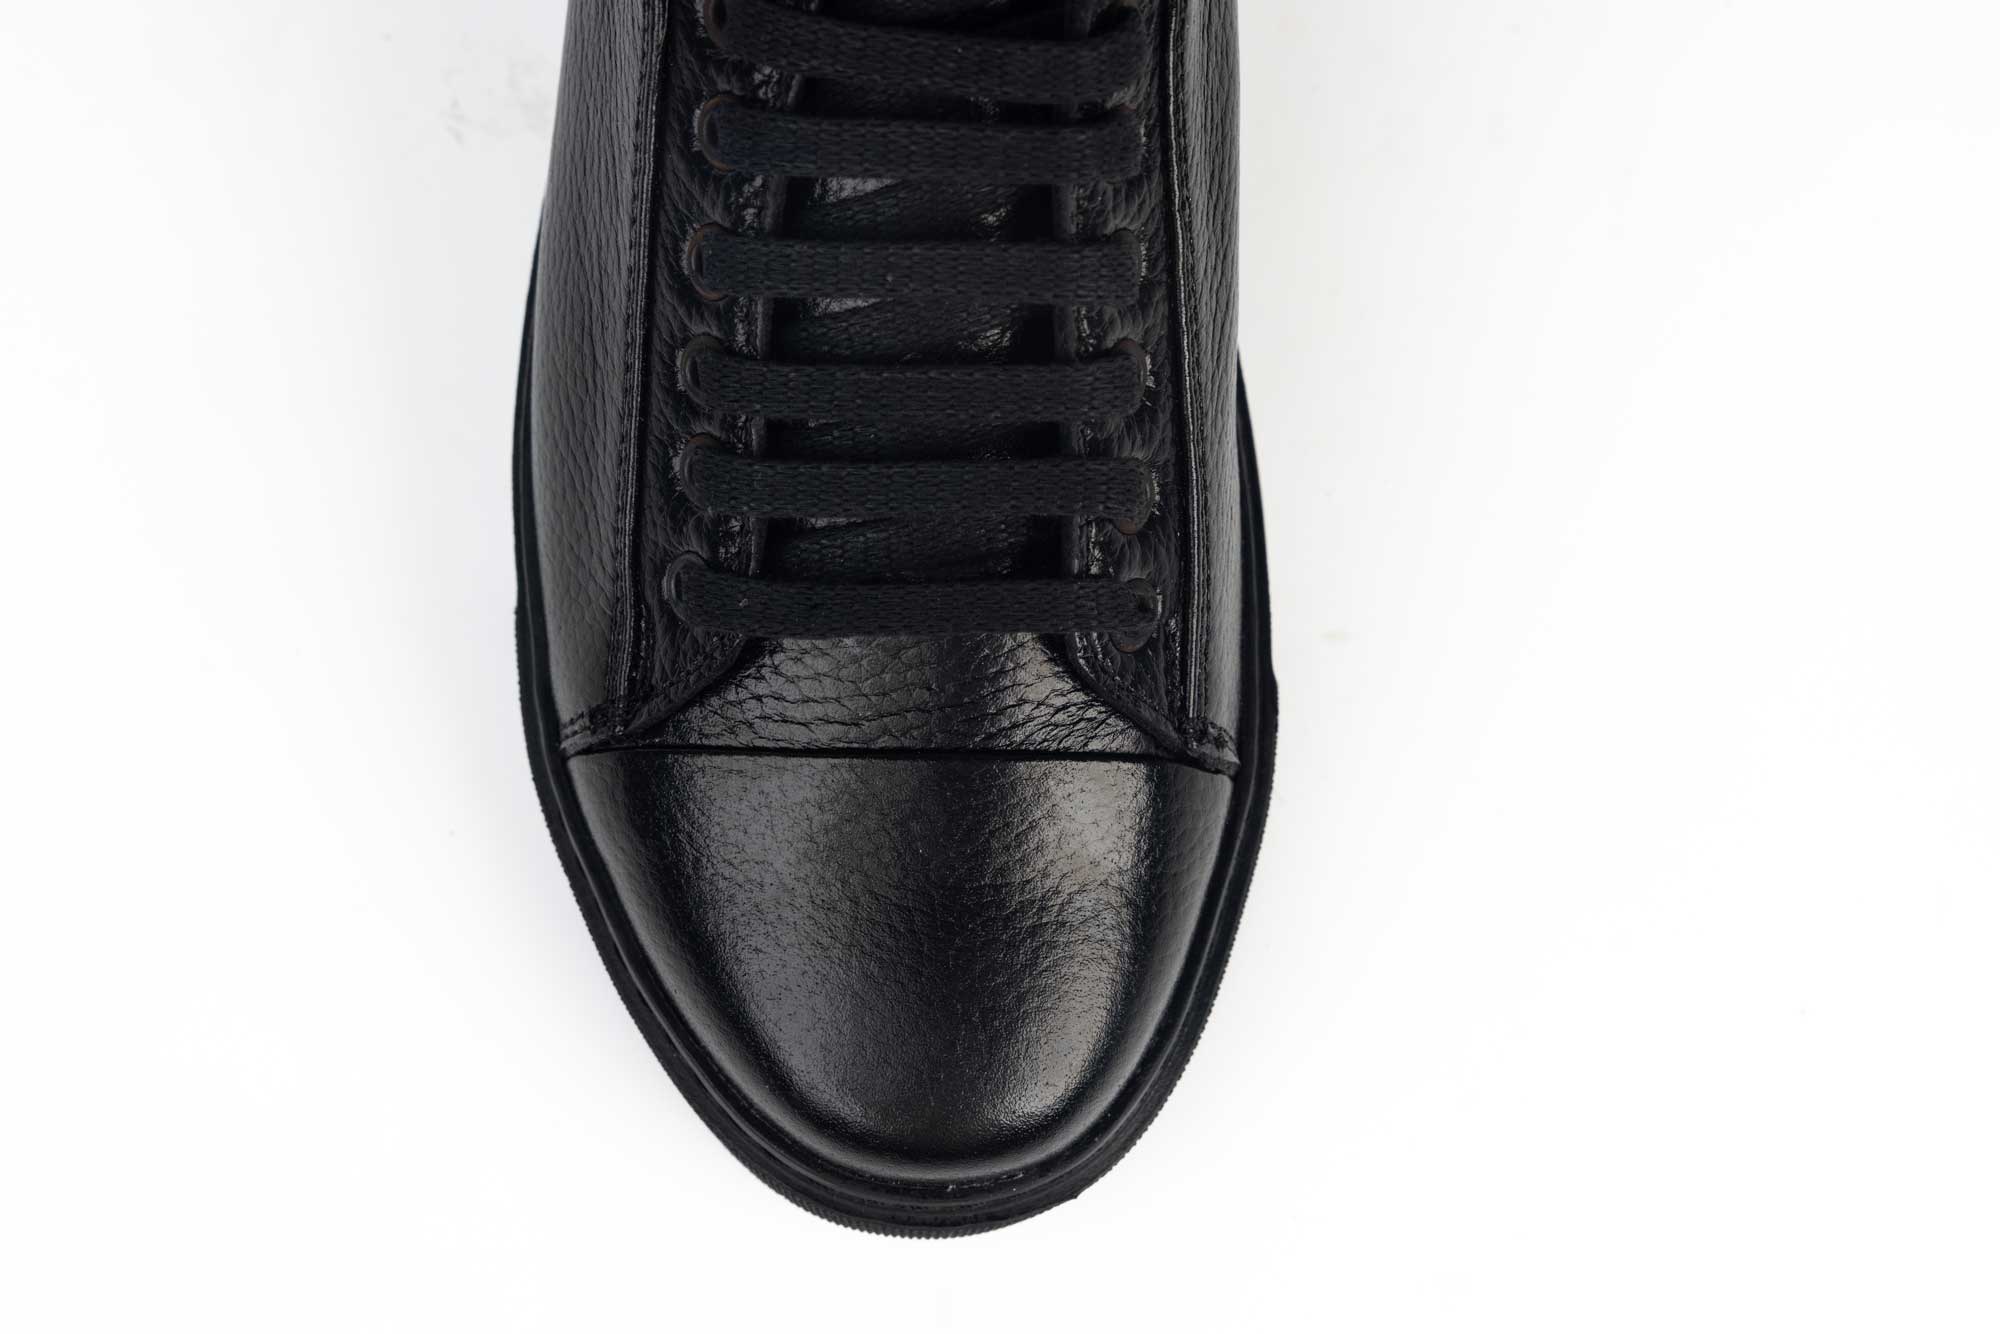 Pantofi din piele naturală casual pentru barbati 6561 negru